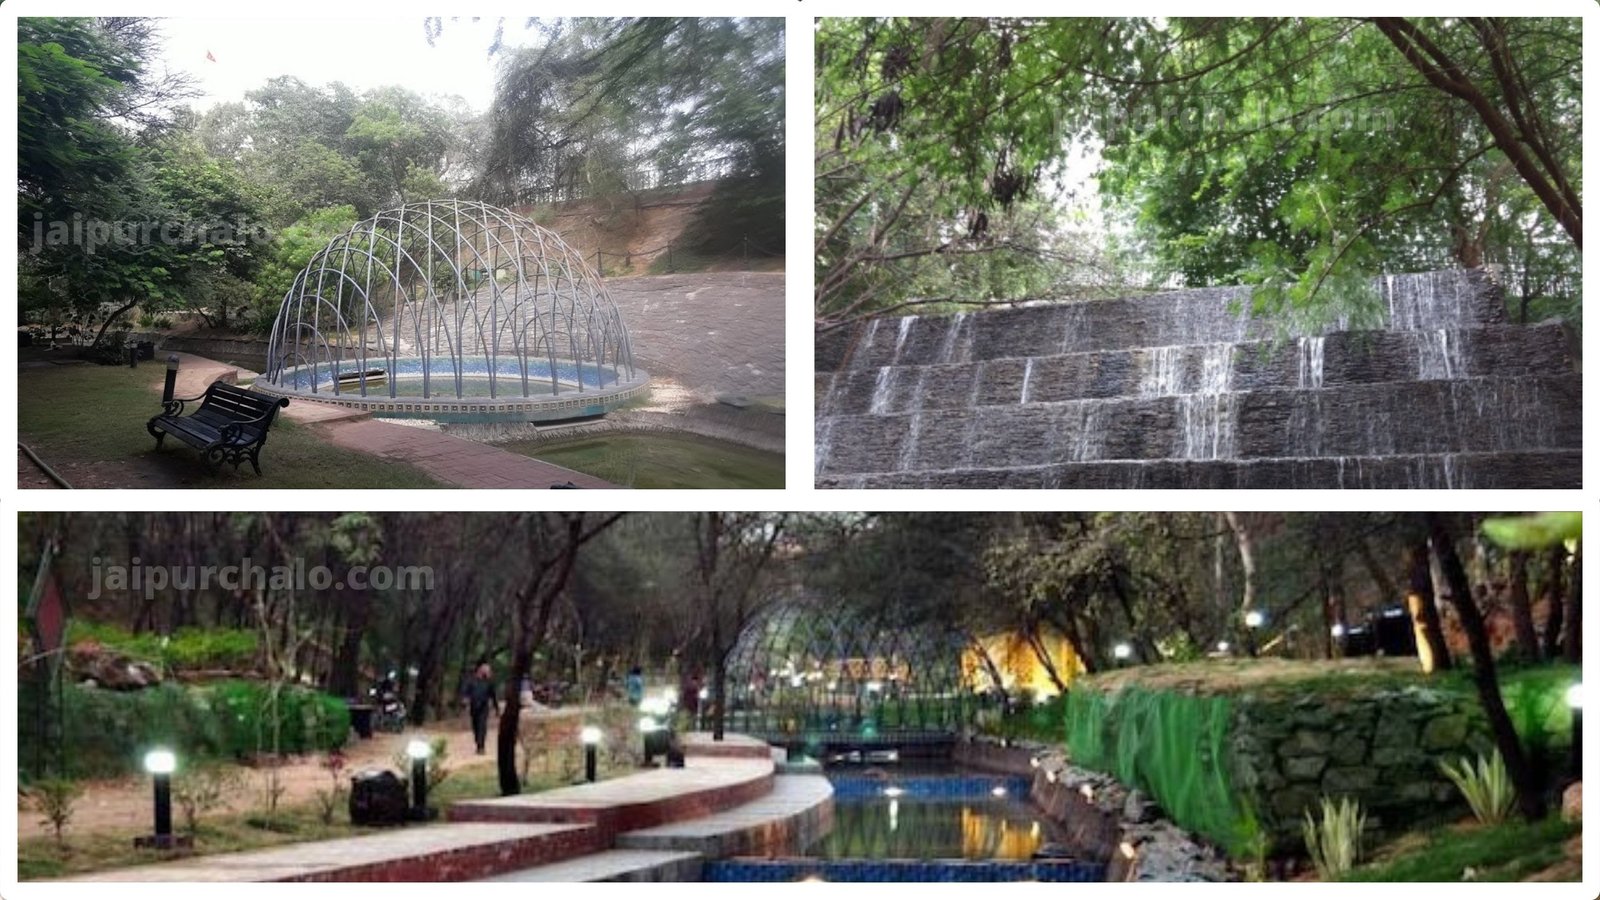 Jaldhara Jaipur water theme park